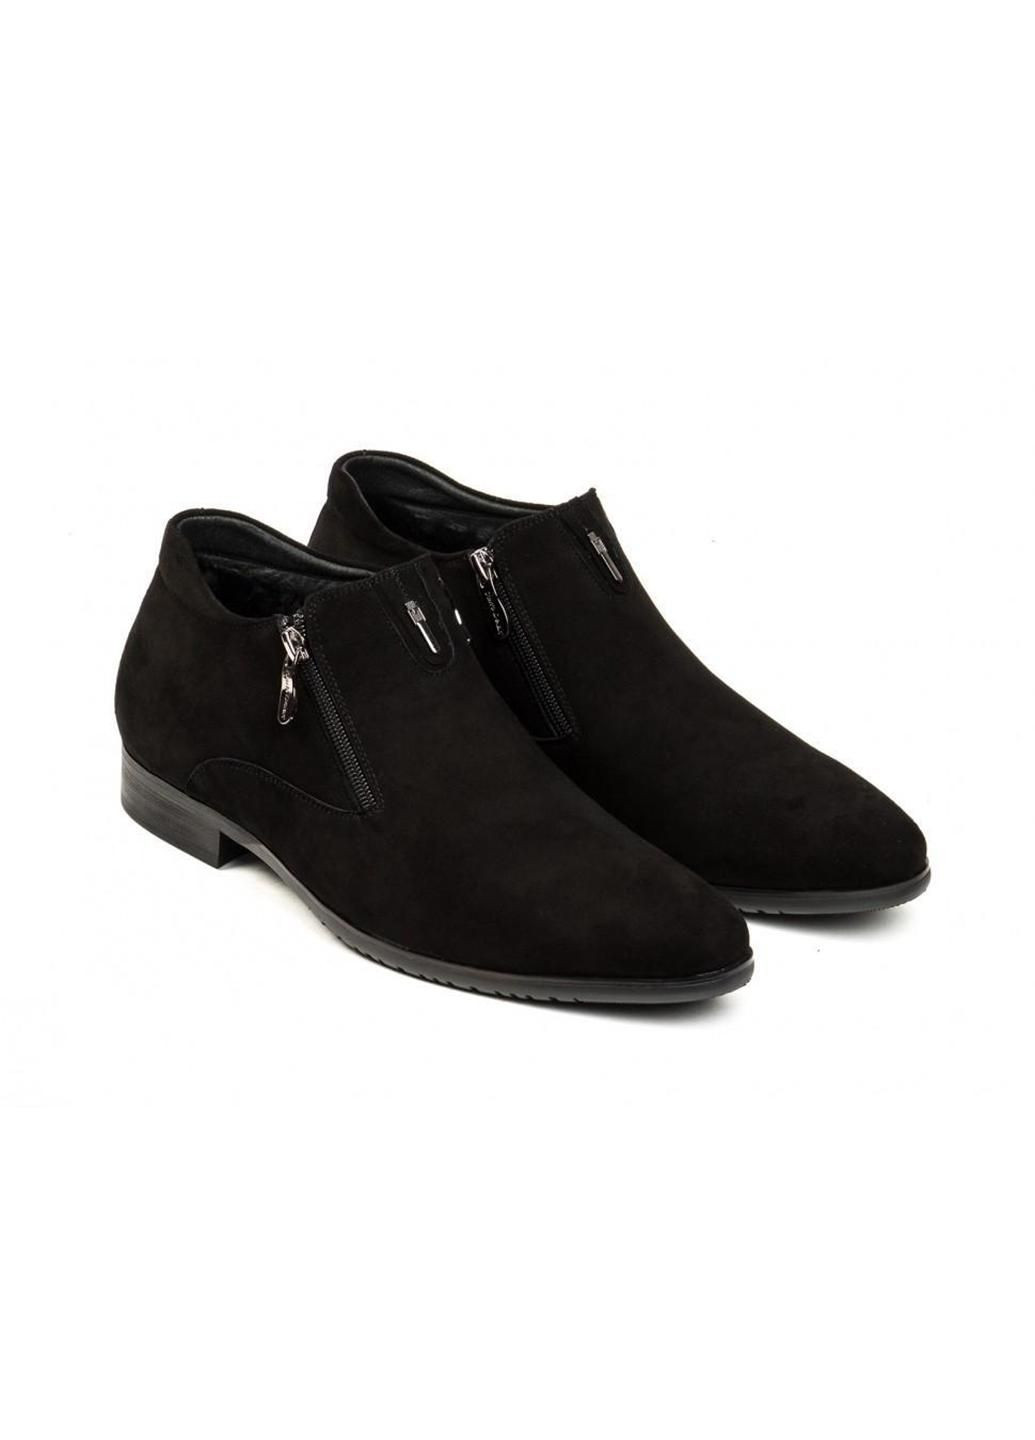 Черные зимние ботинки 7164117 цвет черный Carlo Delari